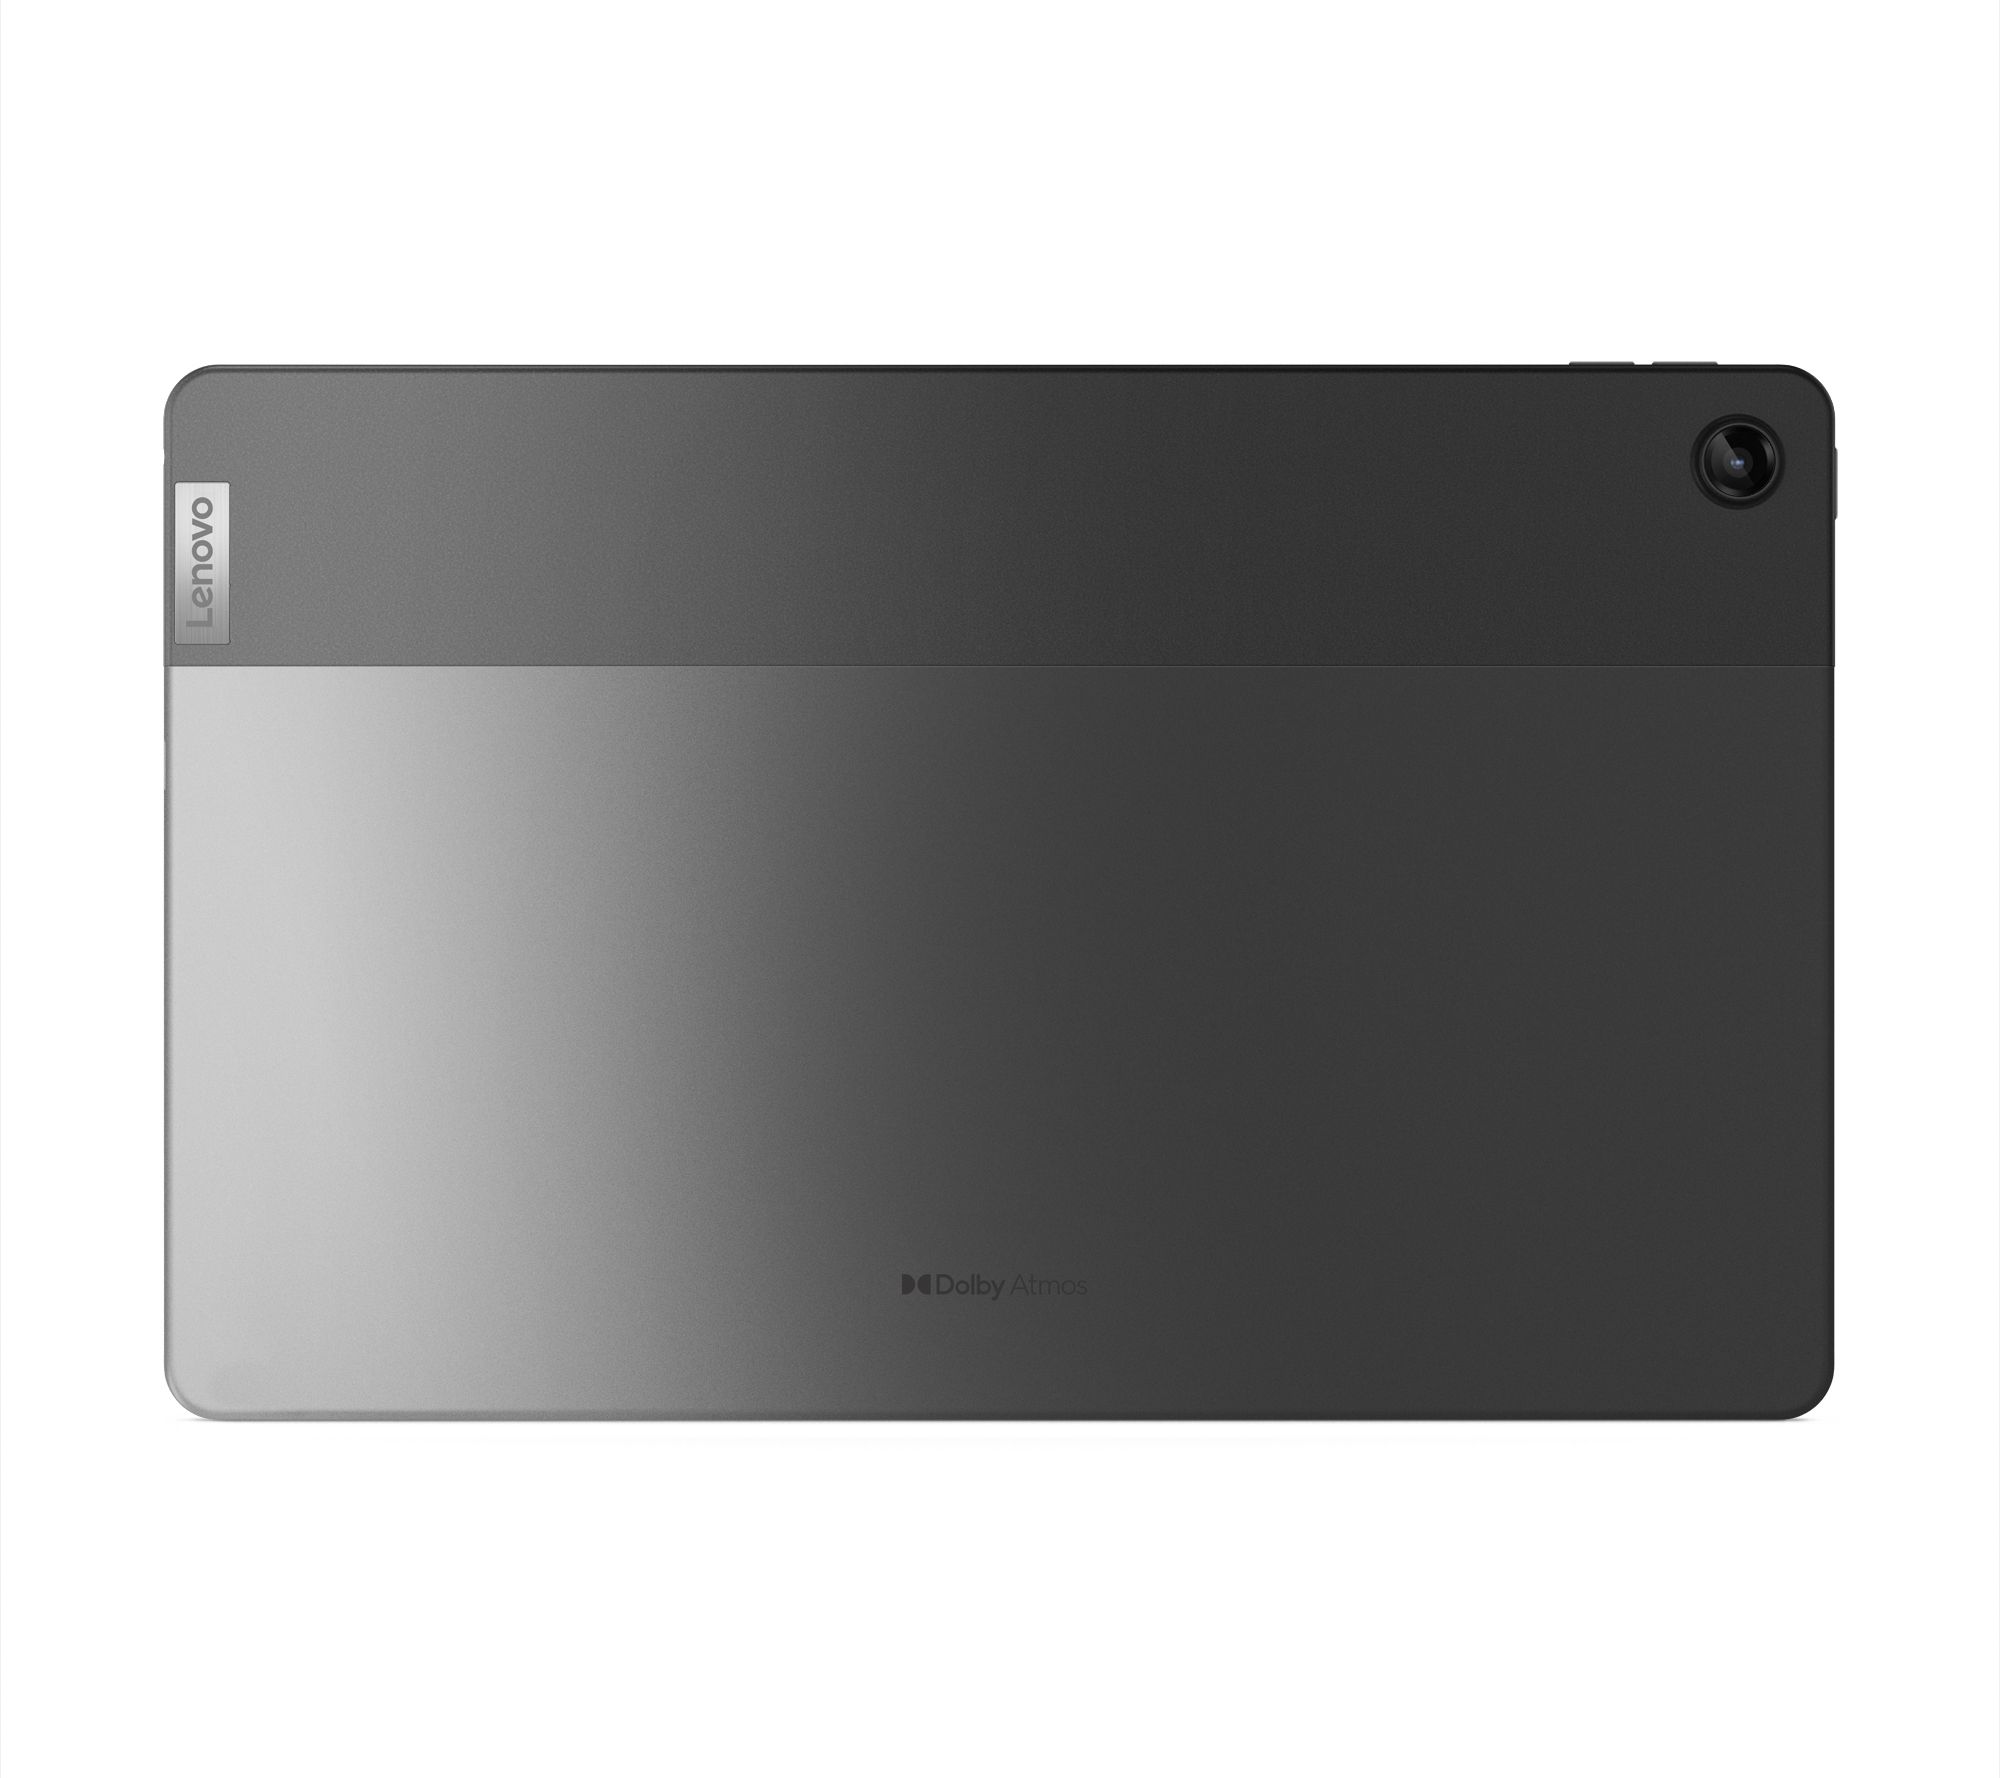 Lenovo M10 - 10.6 4GB RAM - 64GB Storage Tablet with Folio Case - Gray  (ZAAJ0159US)